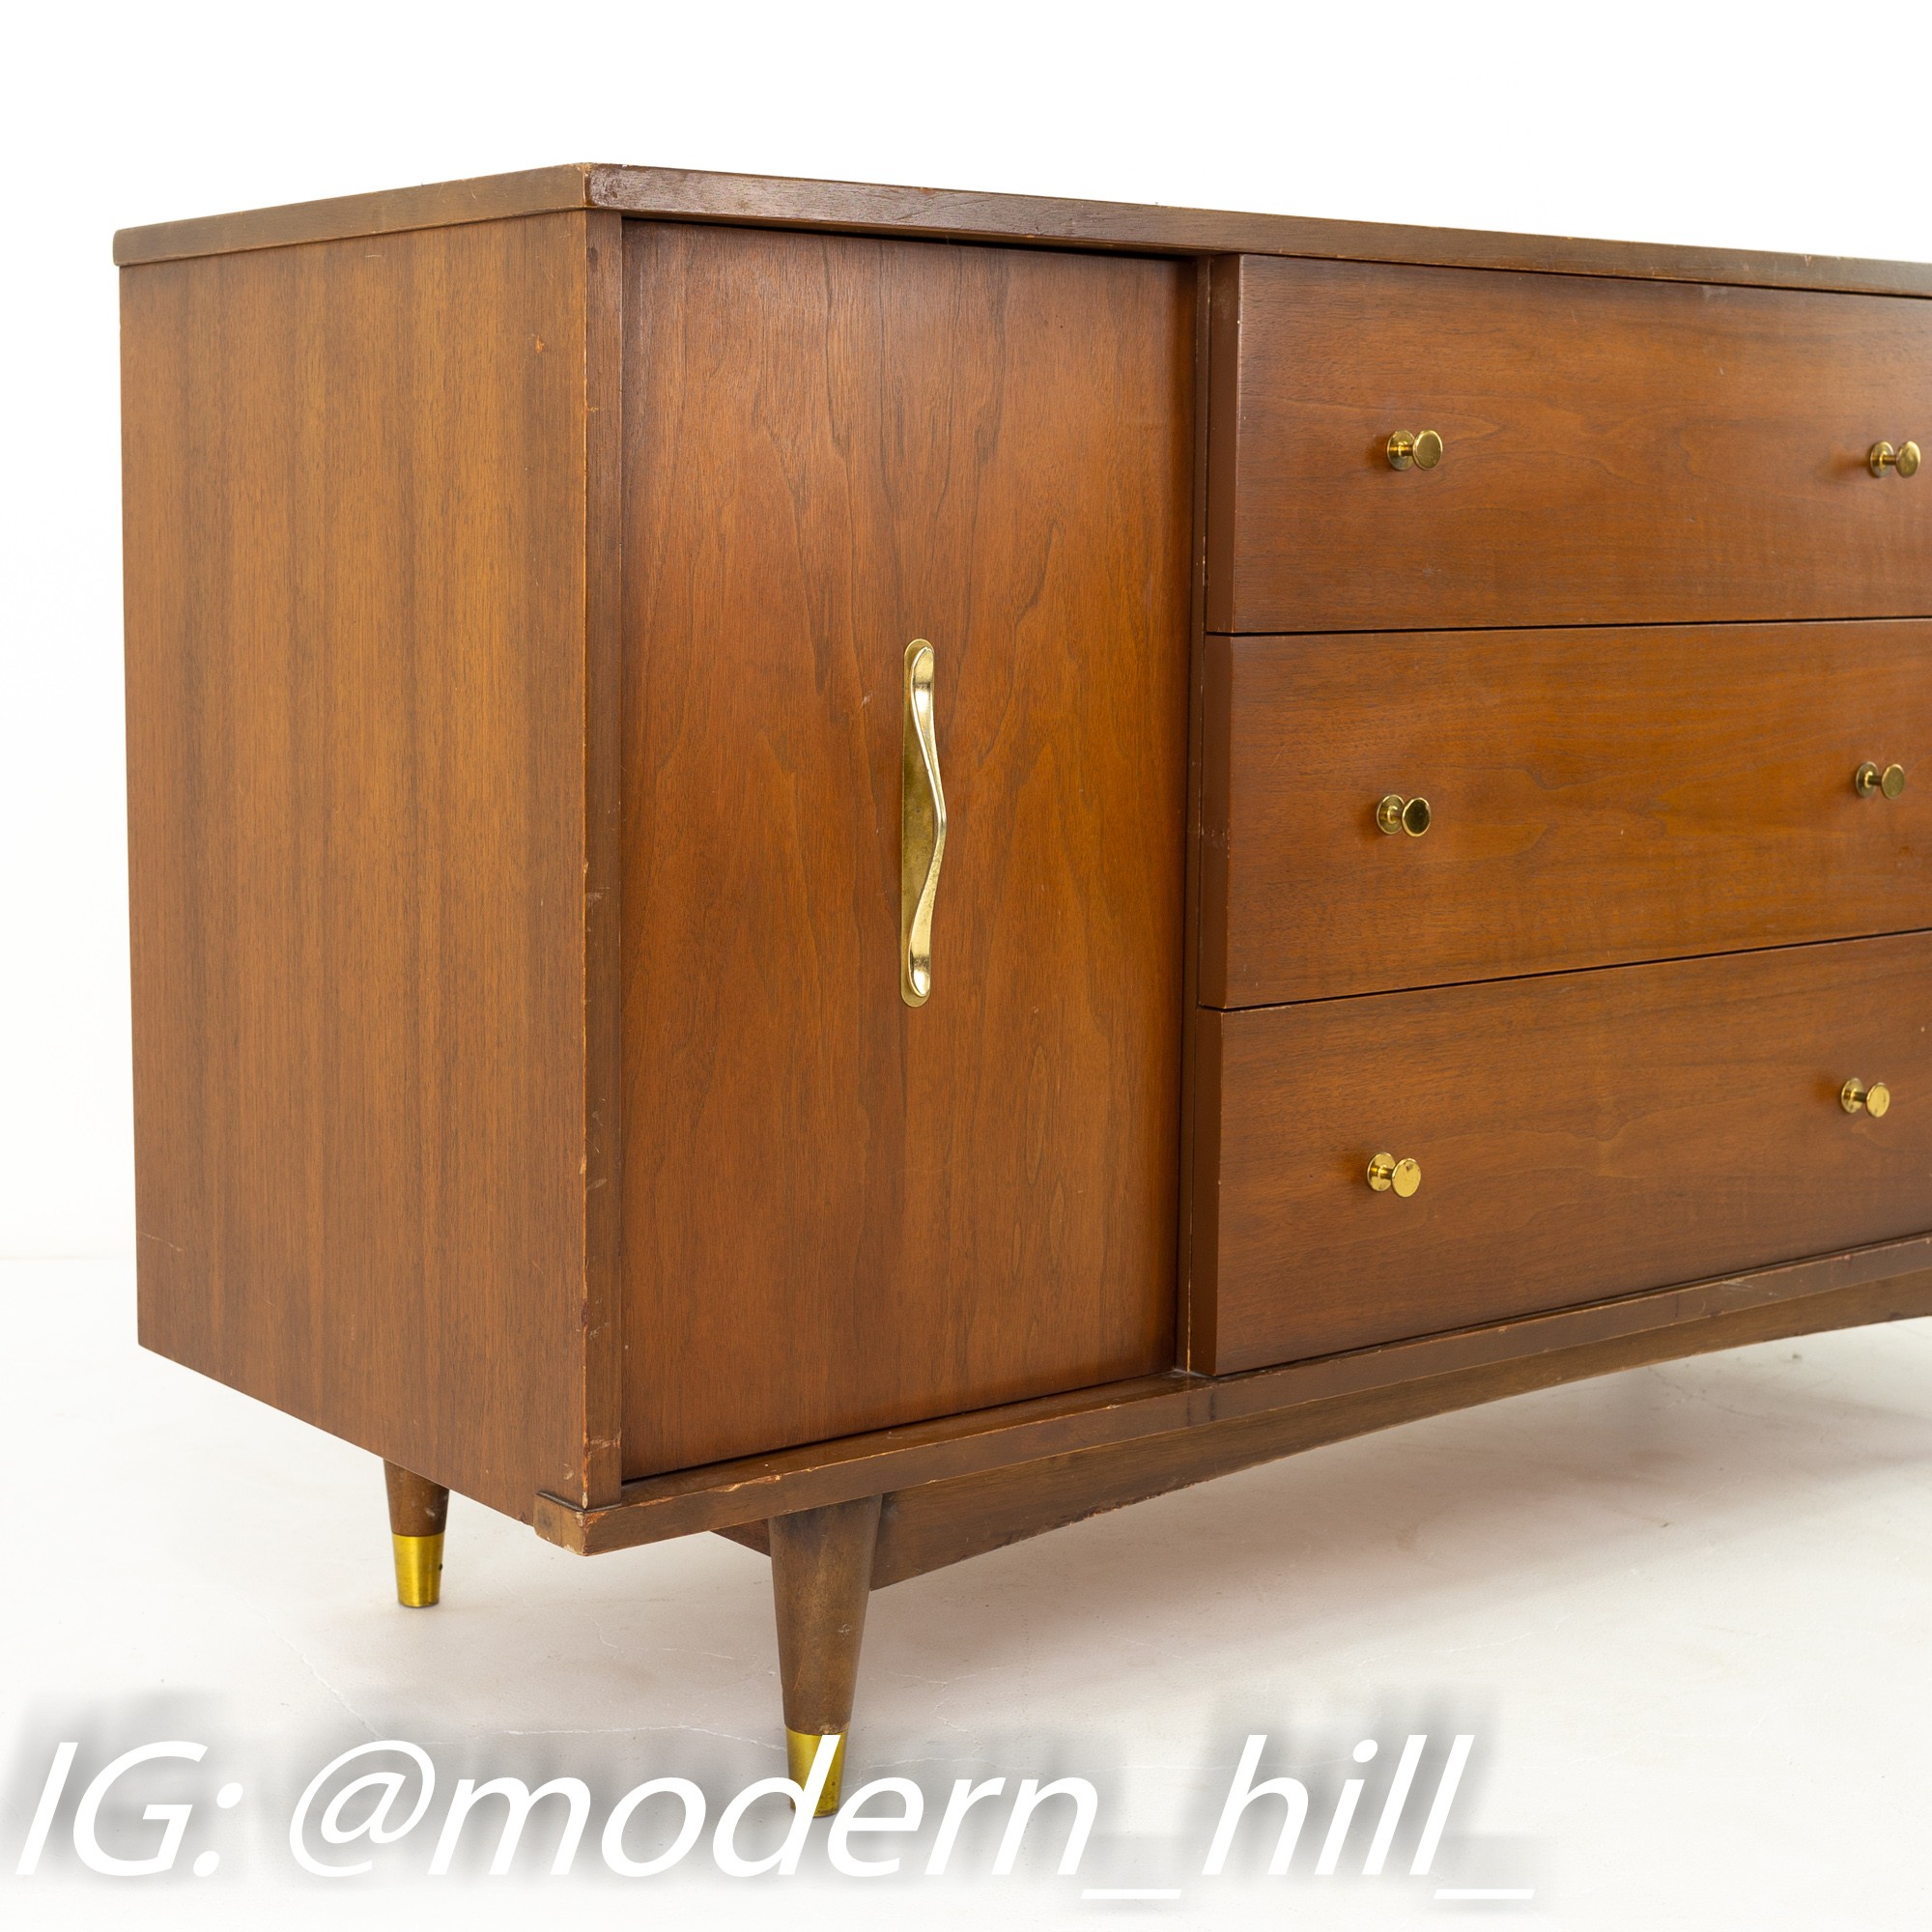 Stanley Furniture Mid Century Walnut Sideboard Credenza